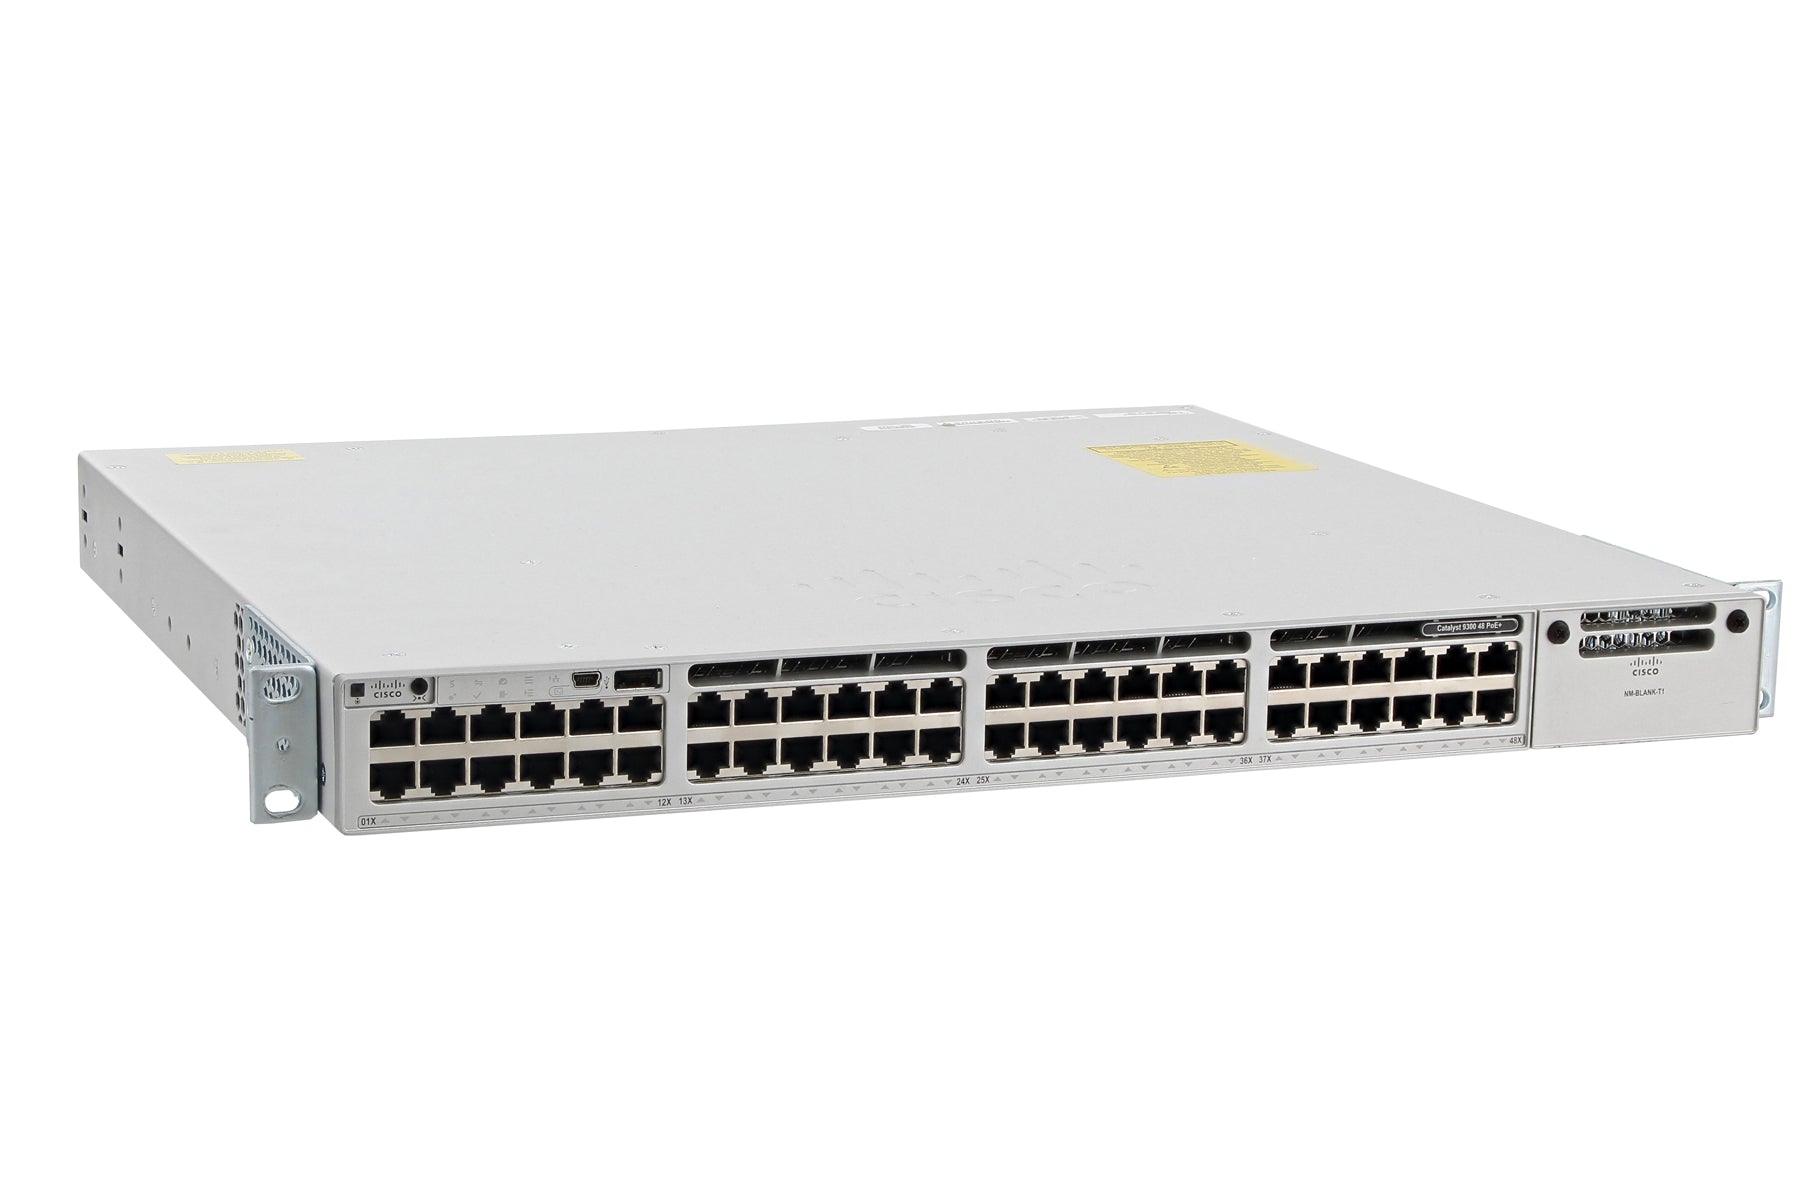 (NEW VENDOR) CISCO C9300-48P-A Catalyst 9300 48-port PoE+, Network Advantage - C2 Computer